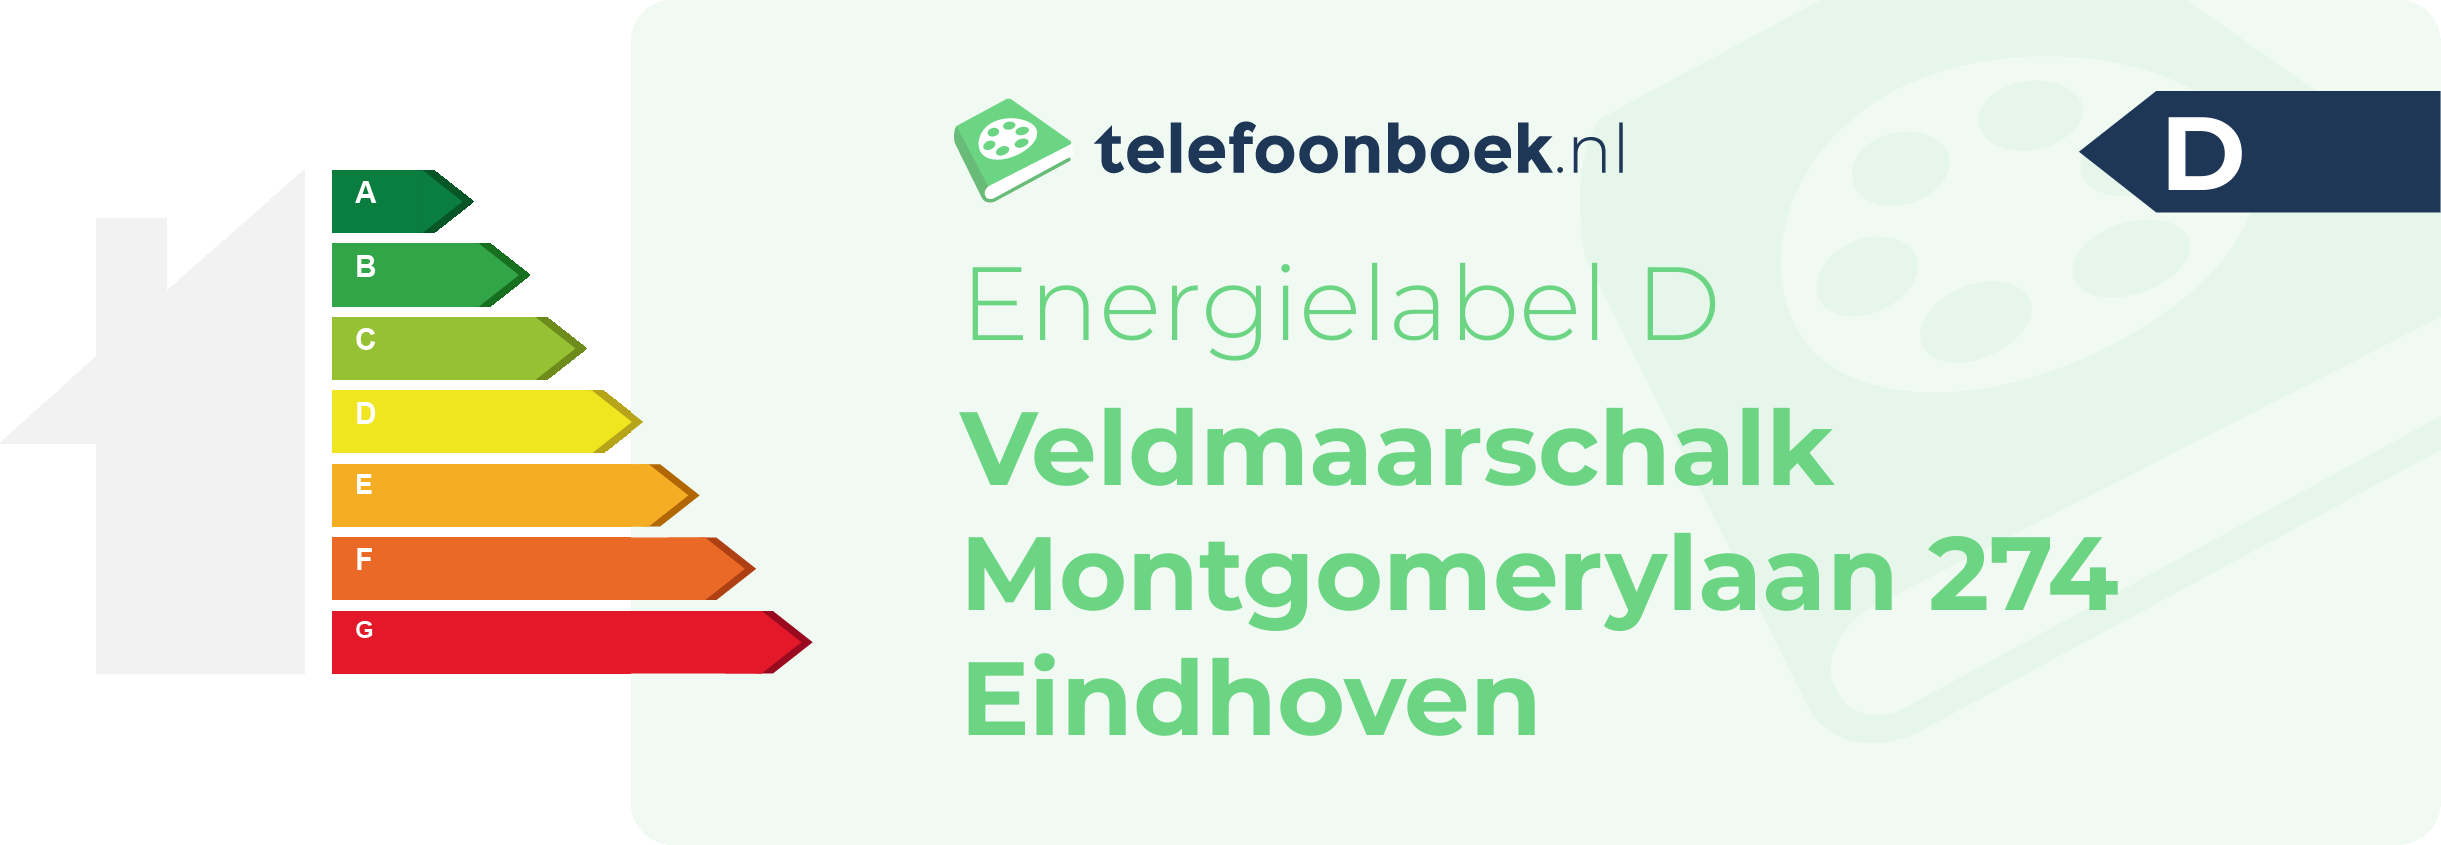 Energielabel Veldmaarschalk Montgomerylaan 274 Eindhoven